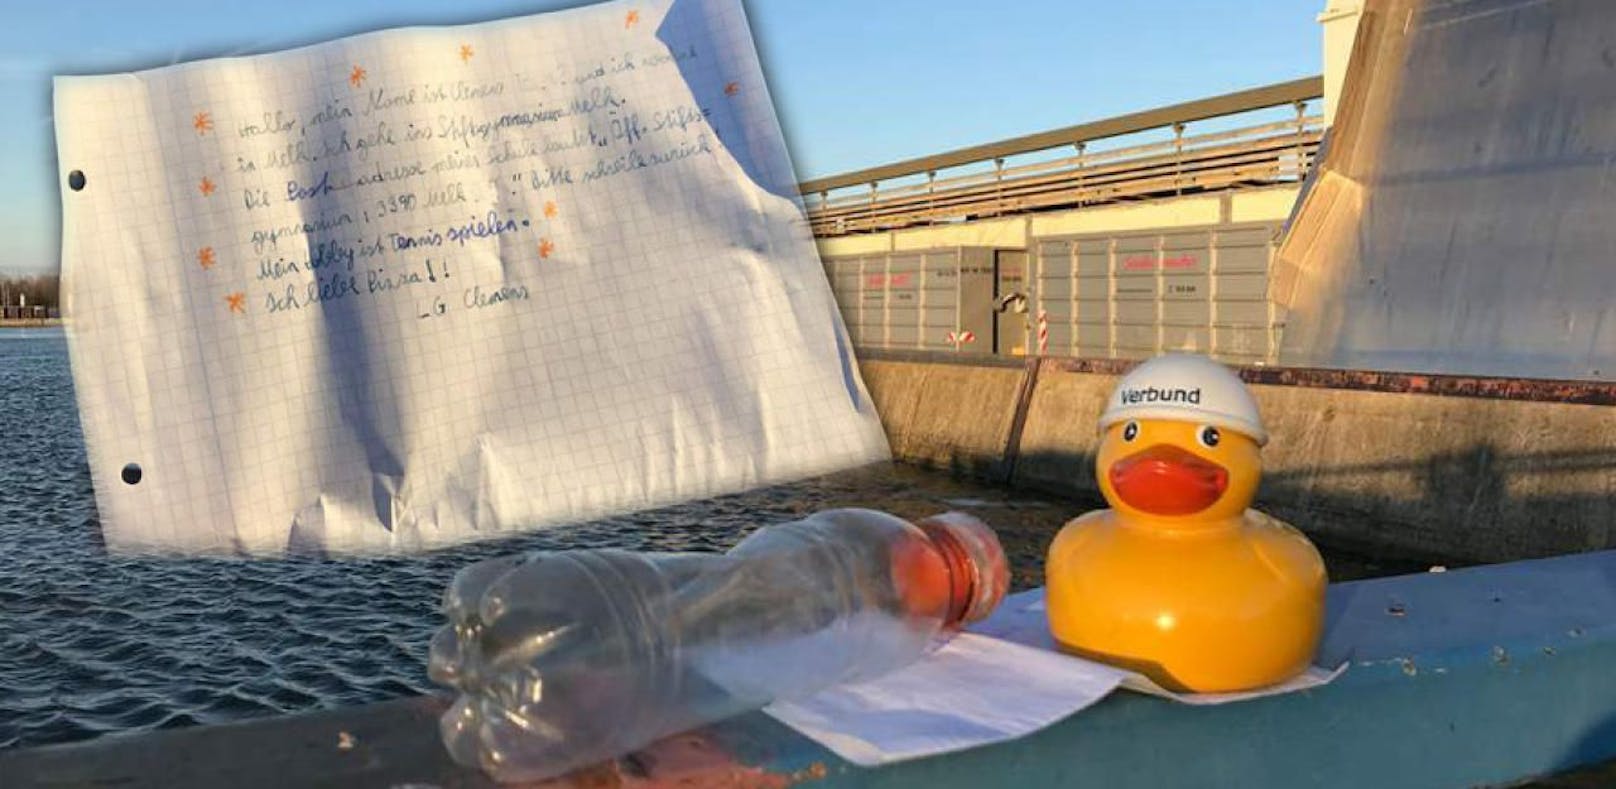 War Flaschenpost zwölf Jahre in Donau unterwegs?